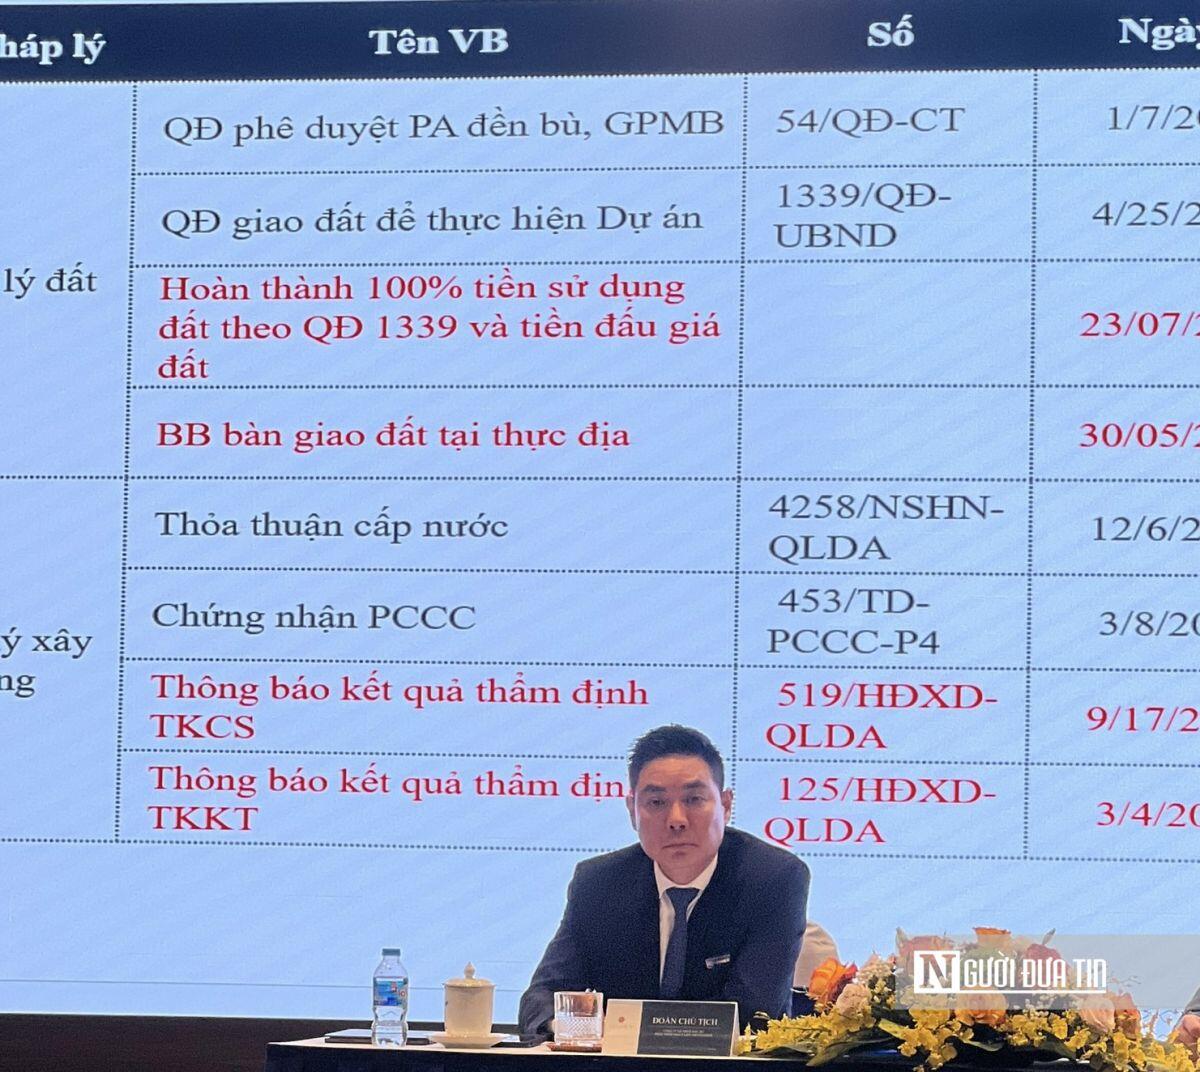 Vinahud chi 950 tỷ đồng mua công ty 1 tháng tuổi từ R&H Group của Chủ tịch Trương Quang Minh